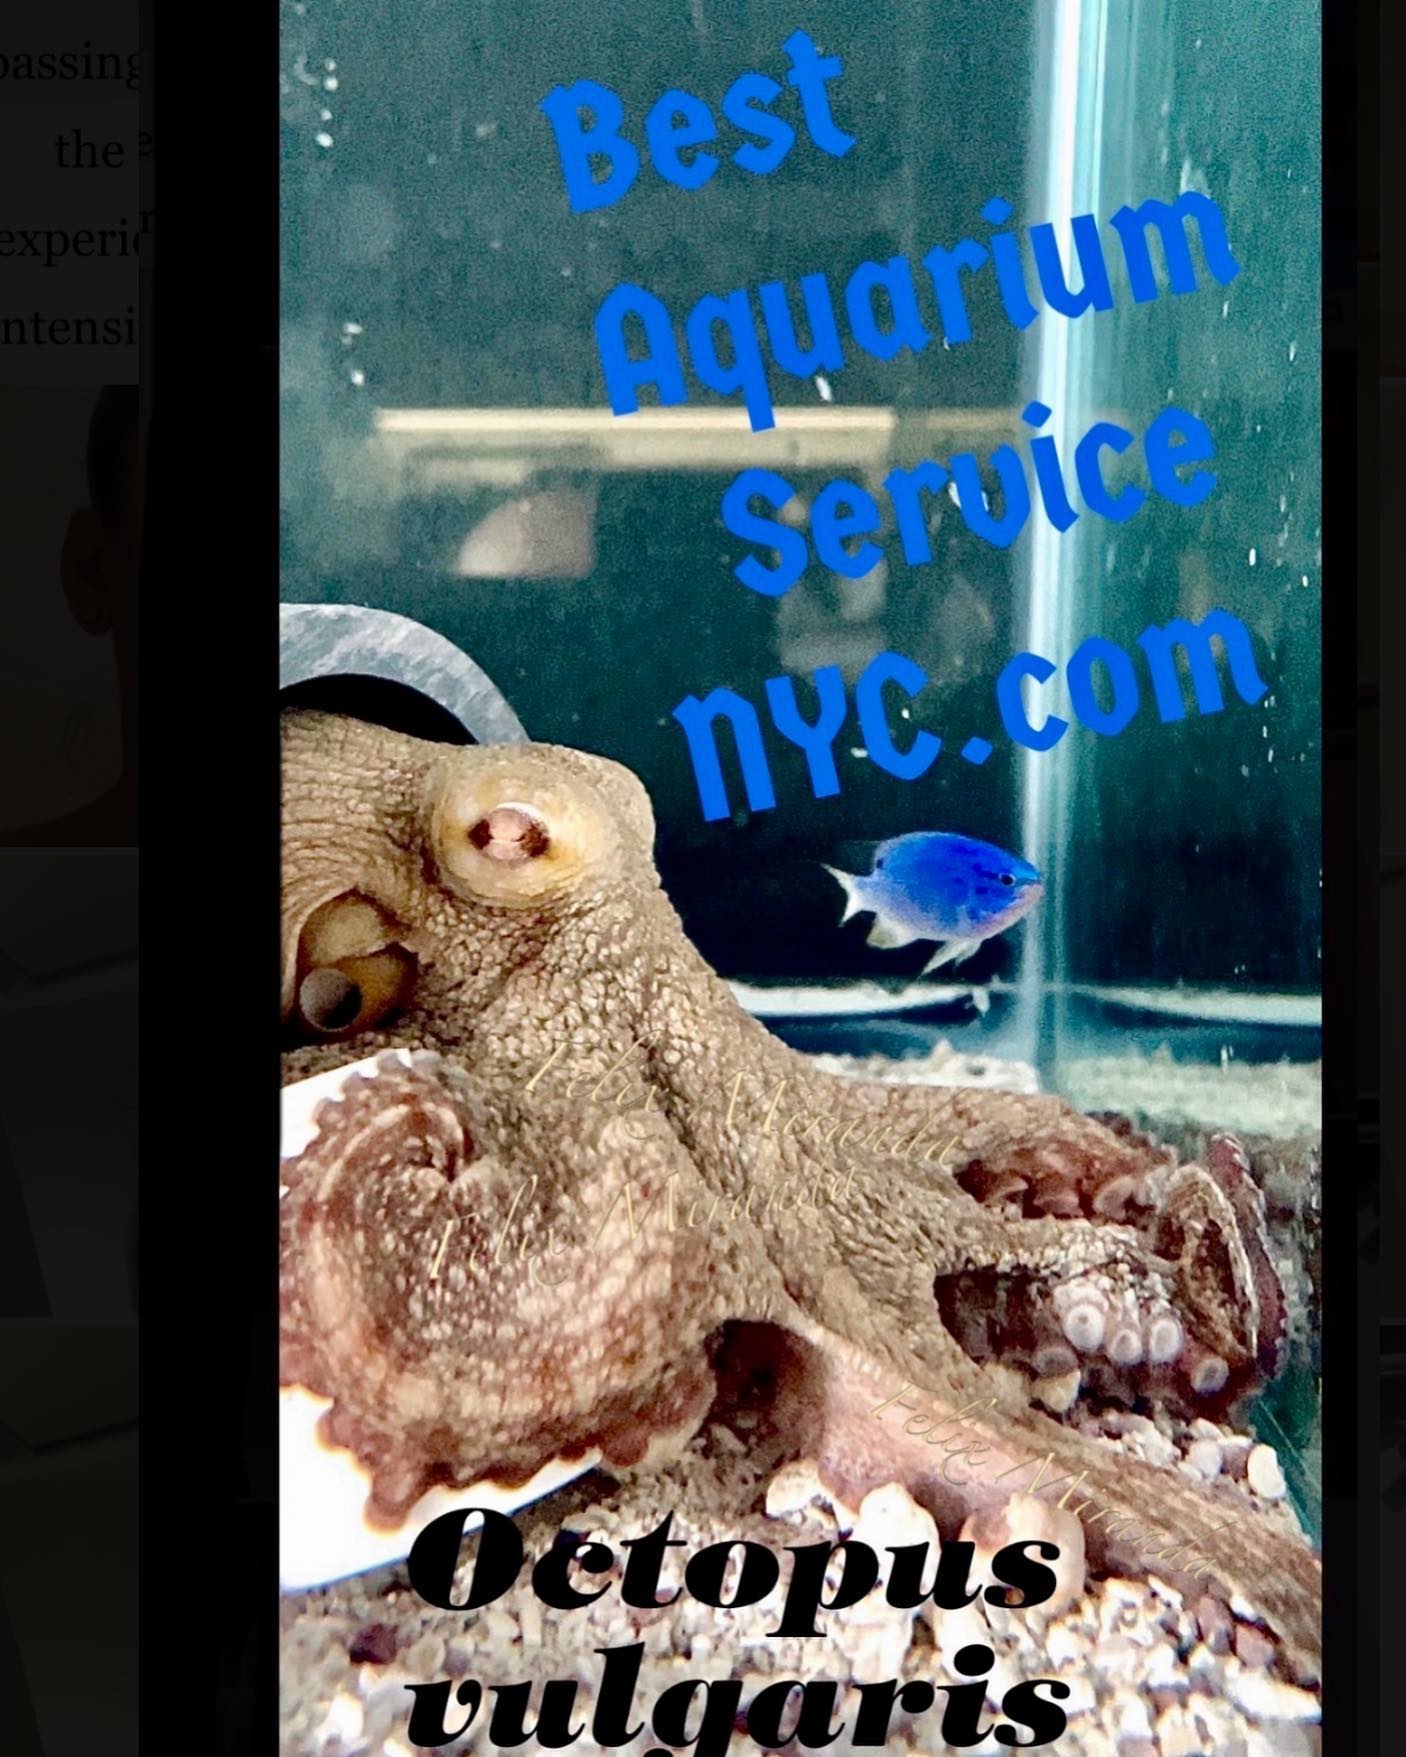 Best Aquarium Service NYC, Inc.